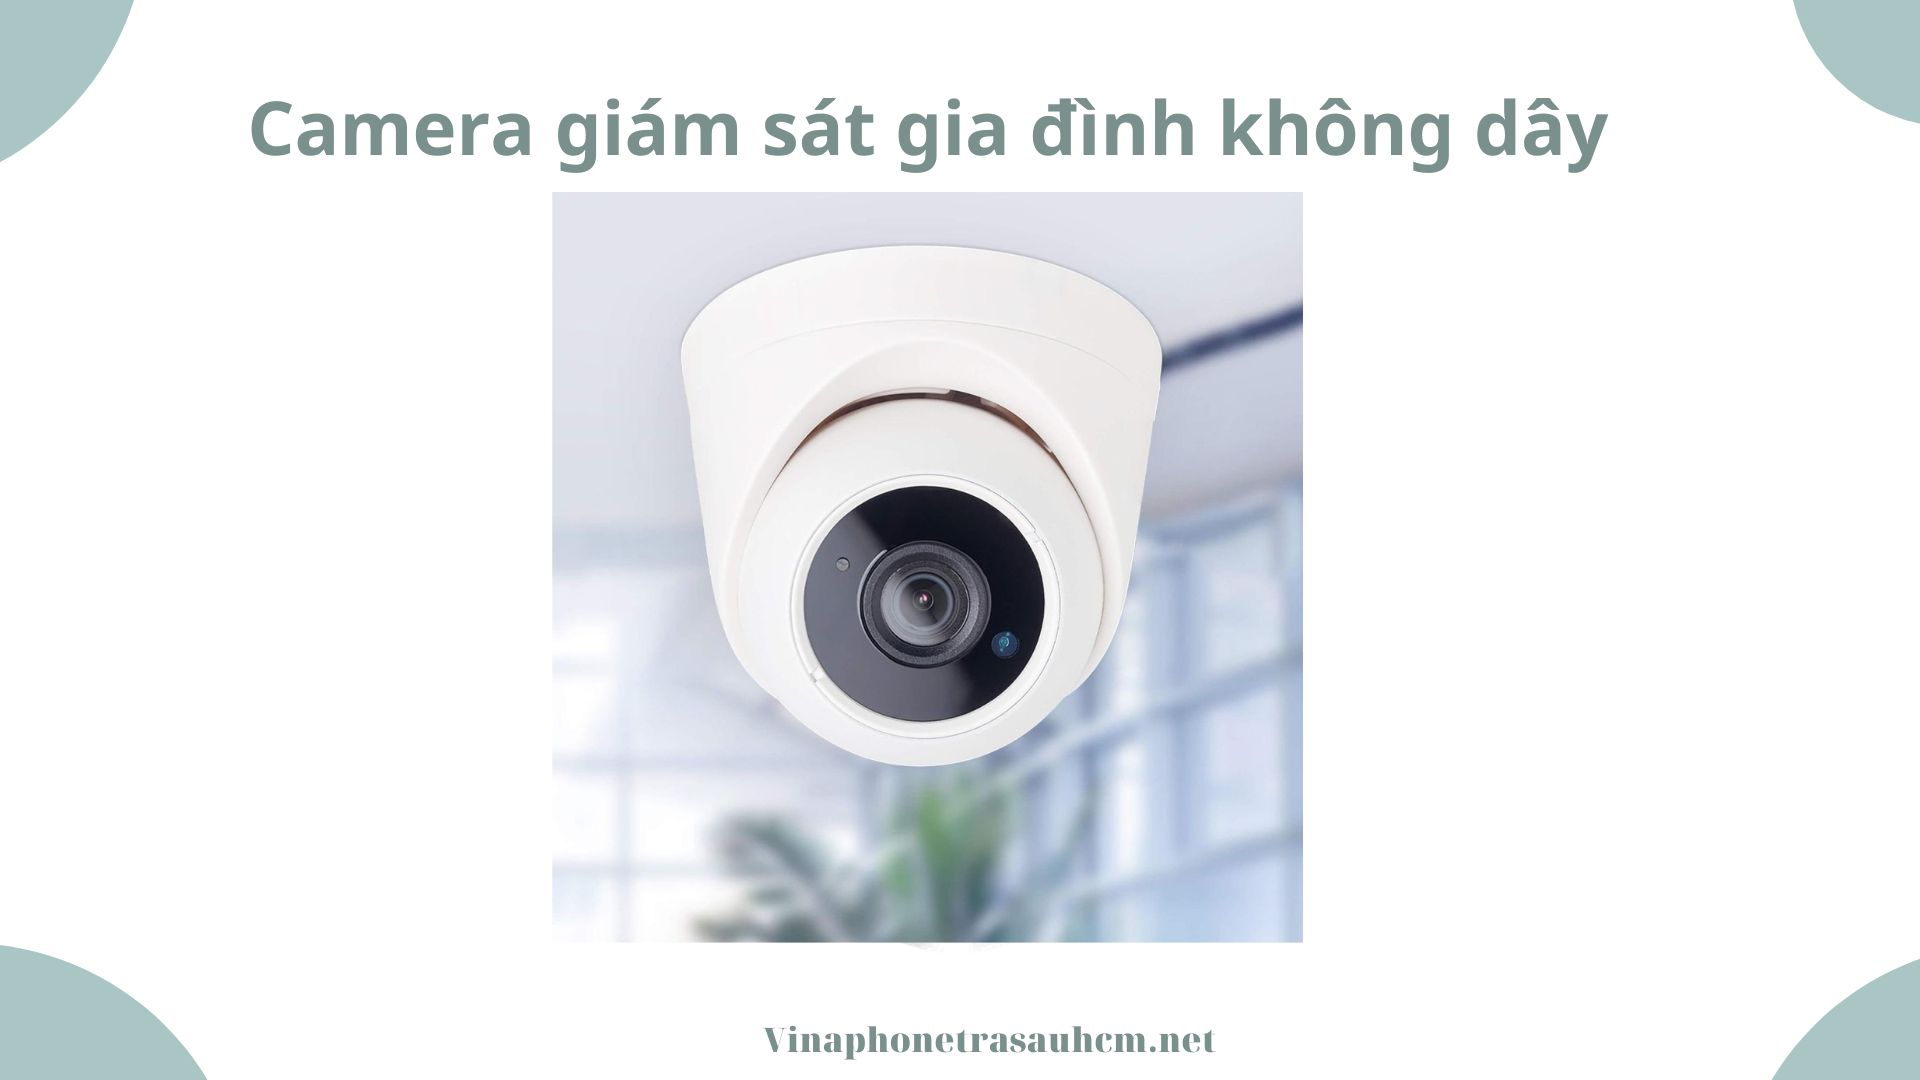 Camera giám sát gia đình không dây: Giải pháp hiện đại cho an ninh gia đình